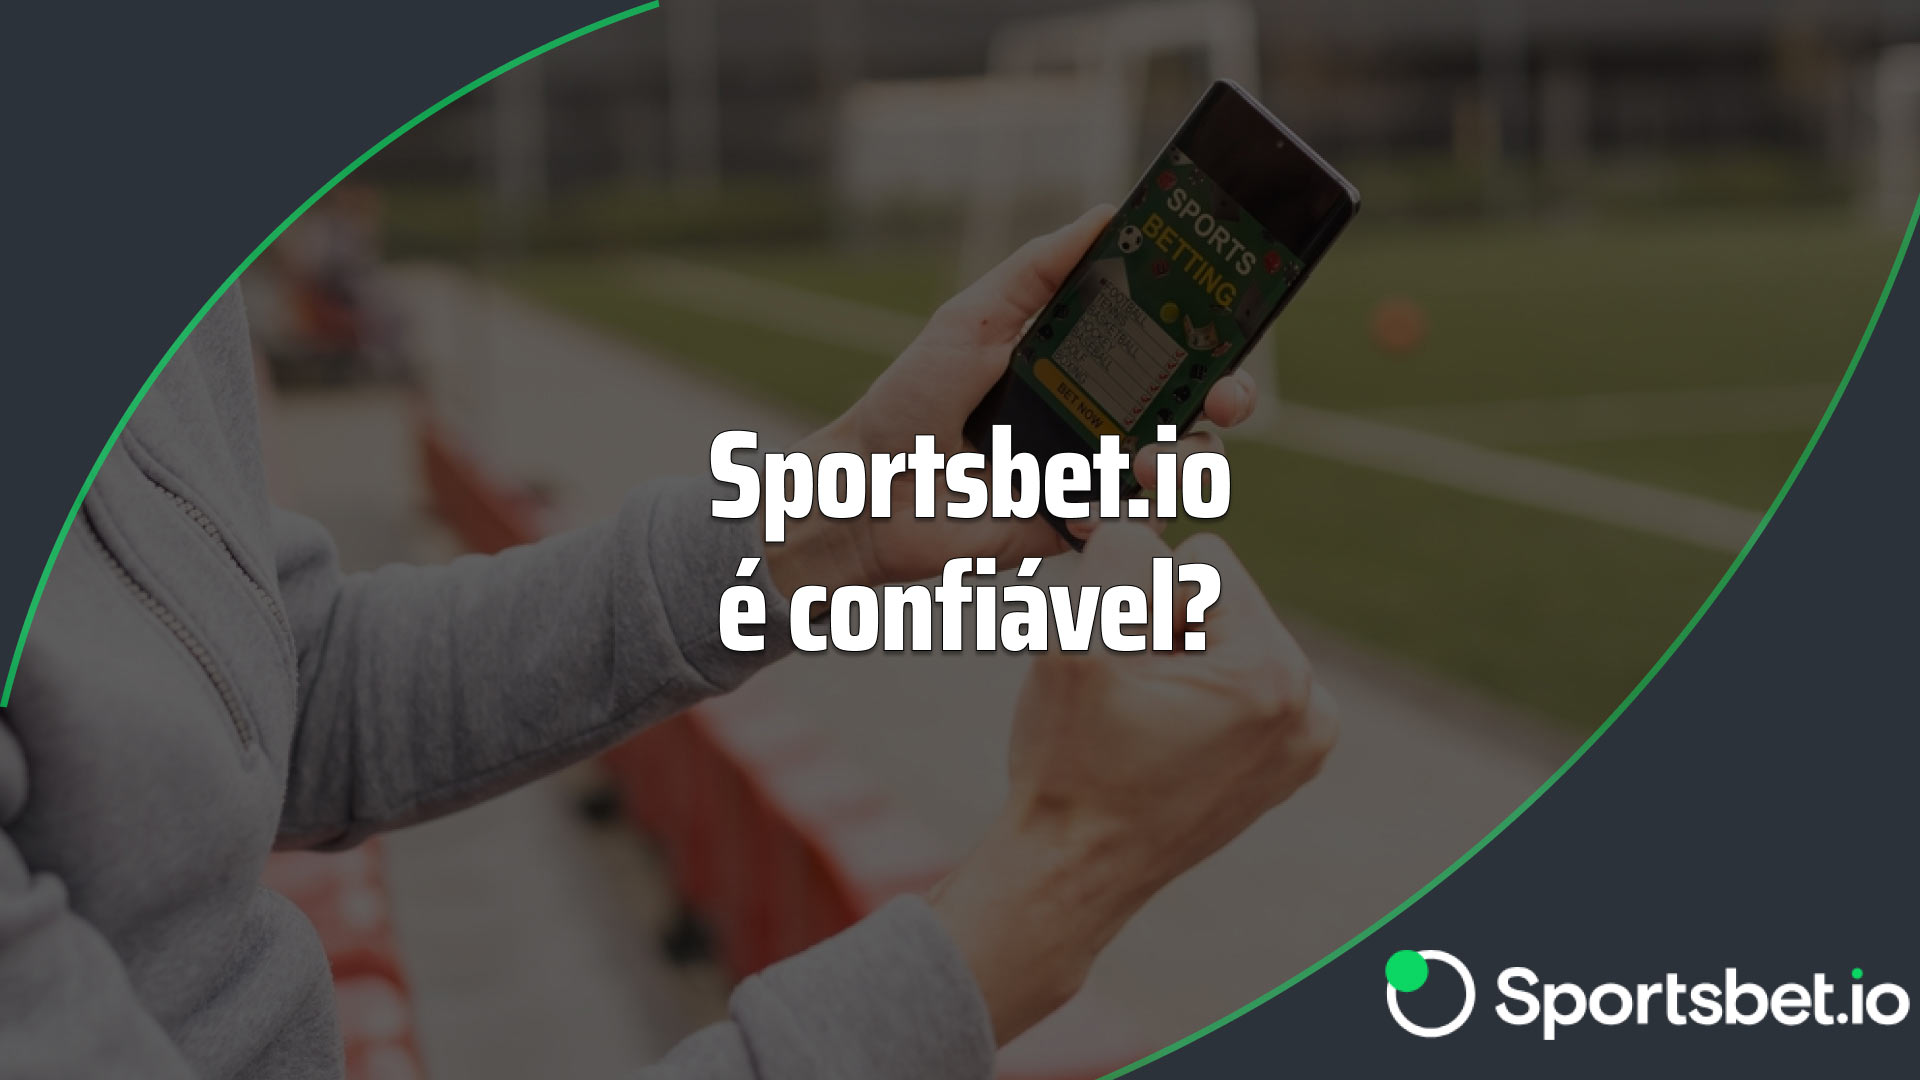 Como apostar pelo celular em futebol pela Sportsbet.io?